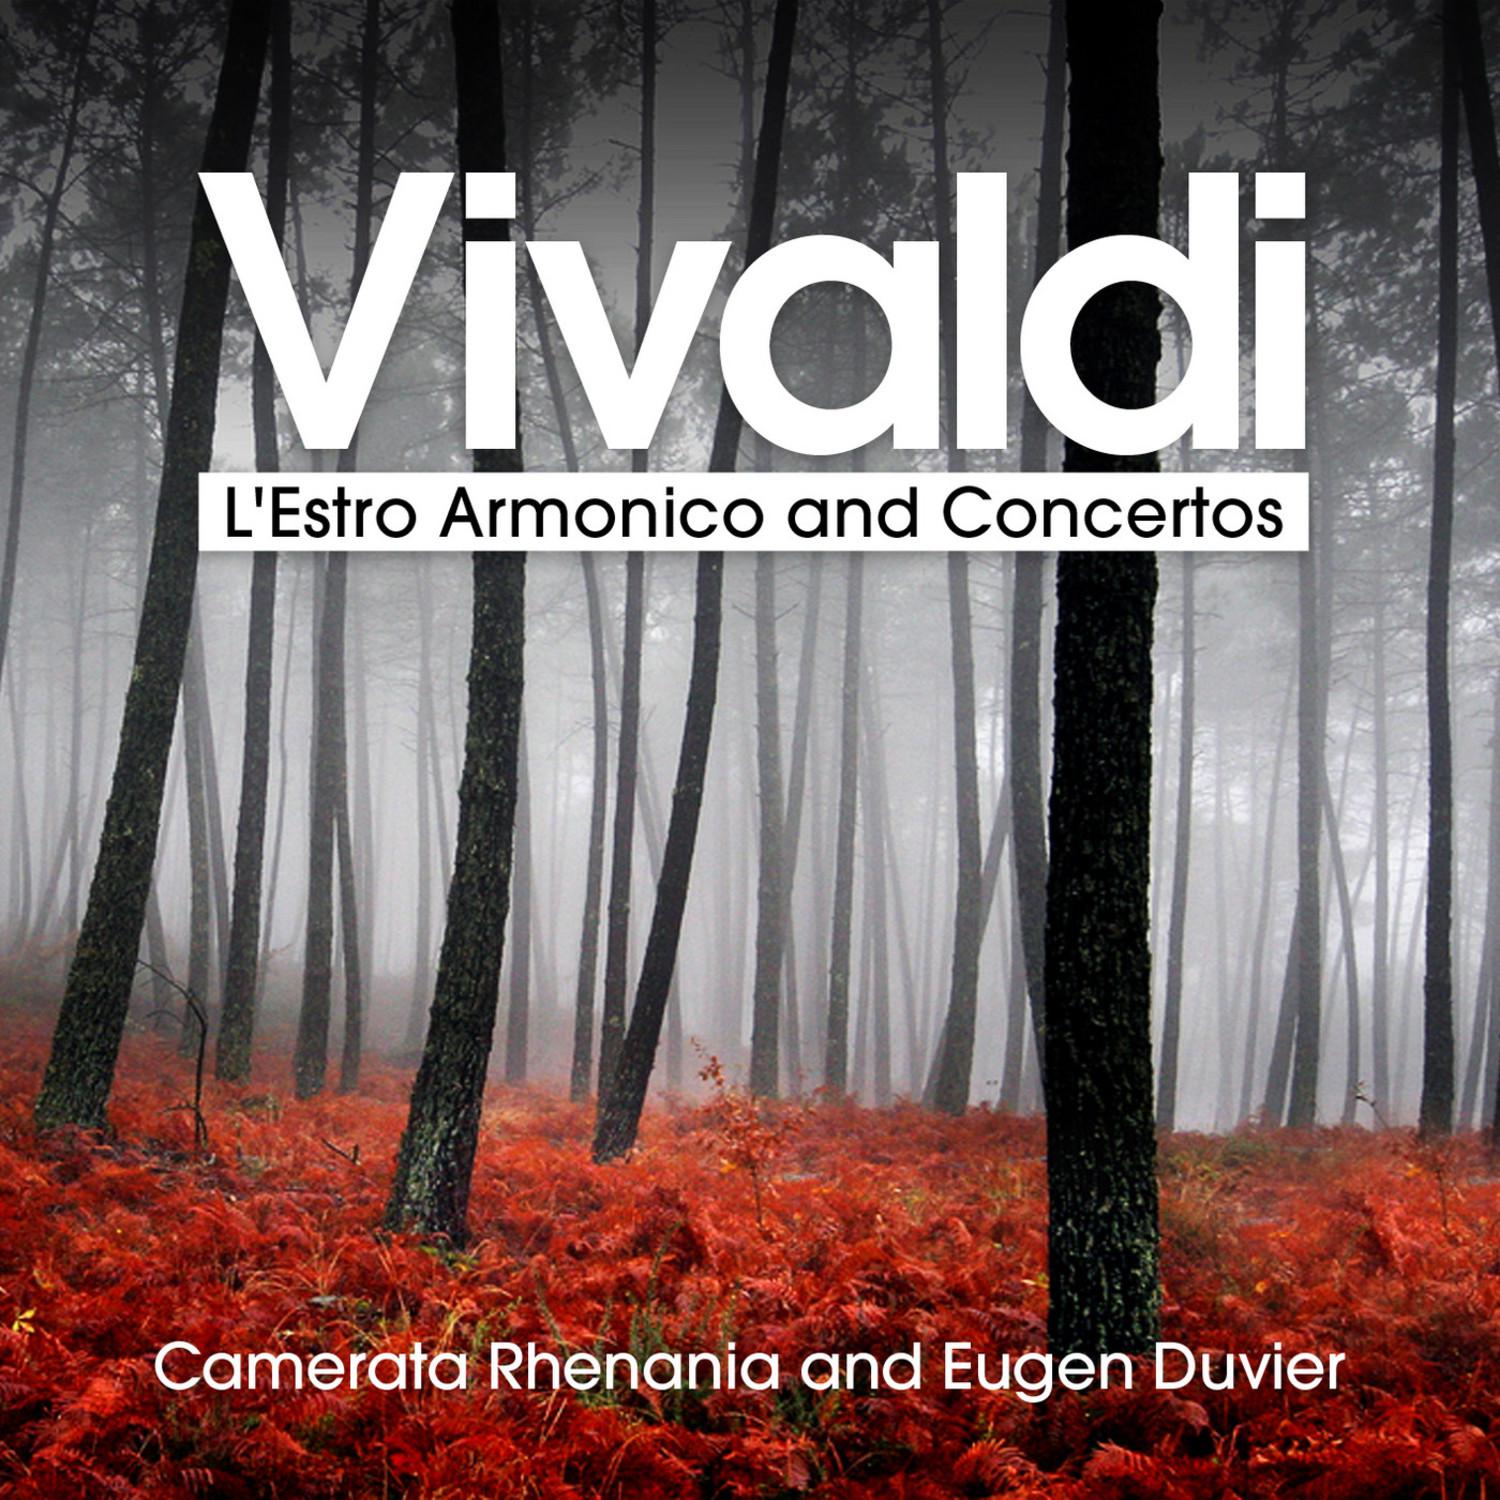 L'Estro Armonico, Op. 3 - Concerto No. 10 in B Minor for 4 Violins, Cello and Strings, RV 580: II. Largo - Larghetto